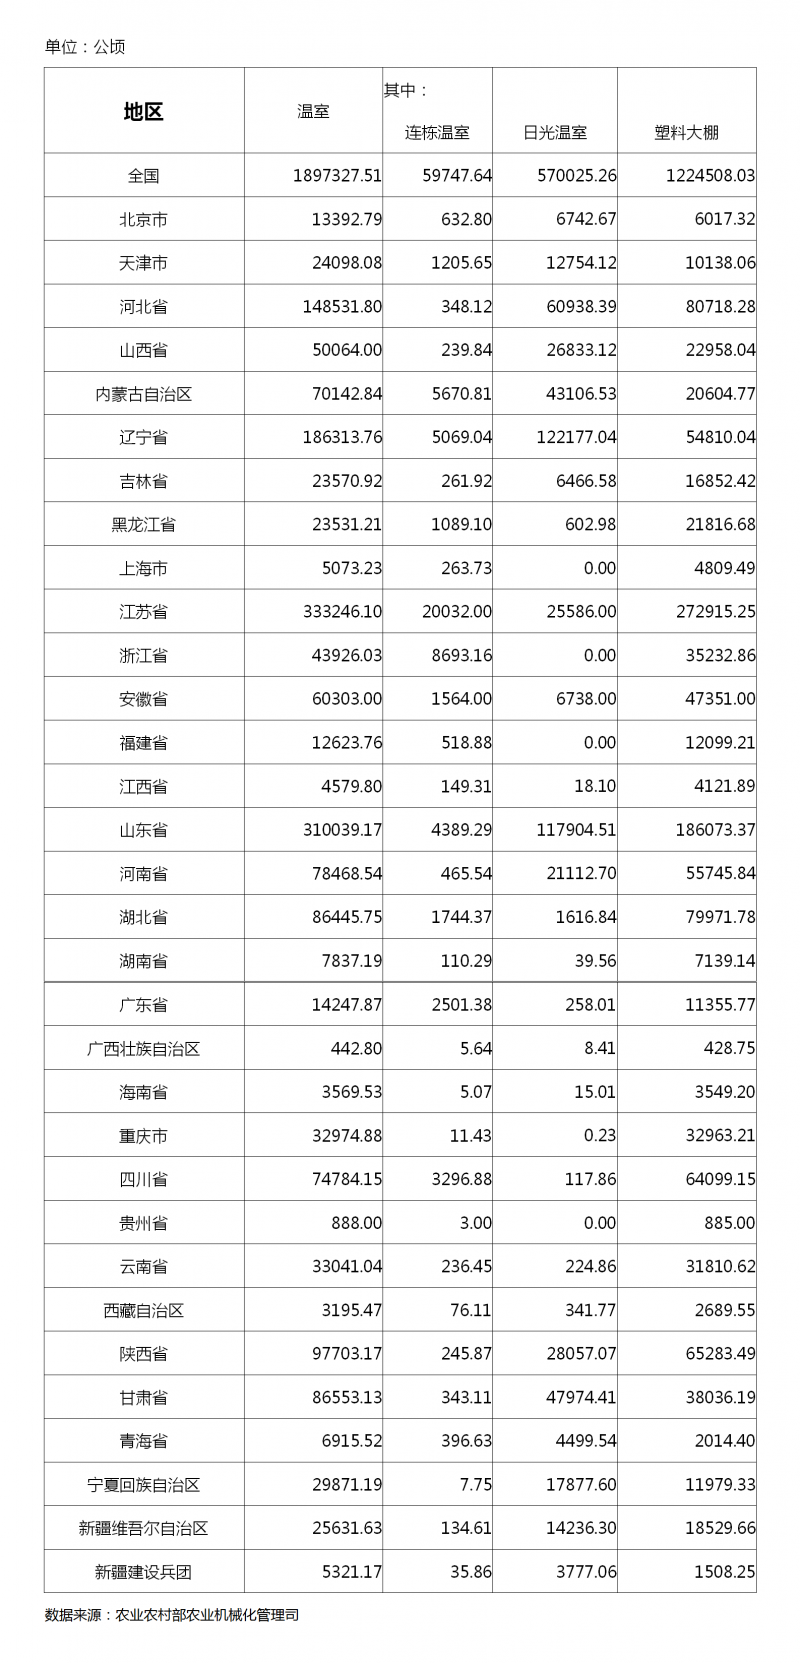 2019年中国温室面积一览表